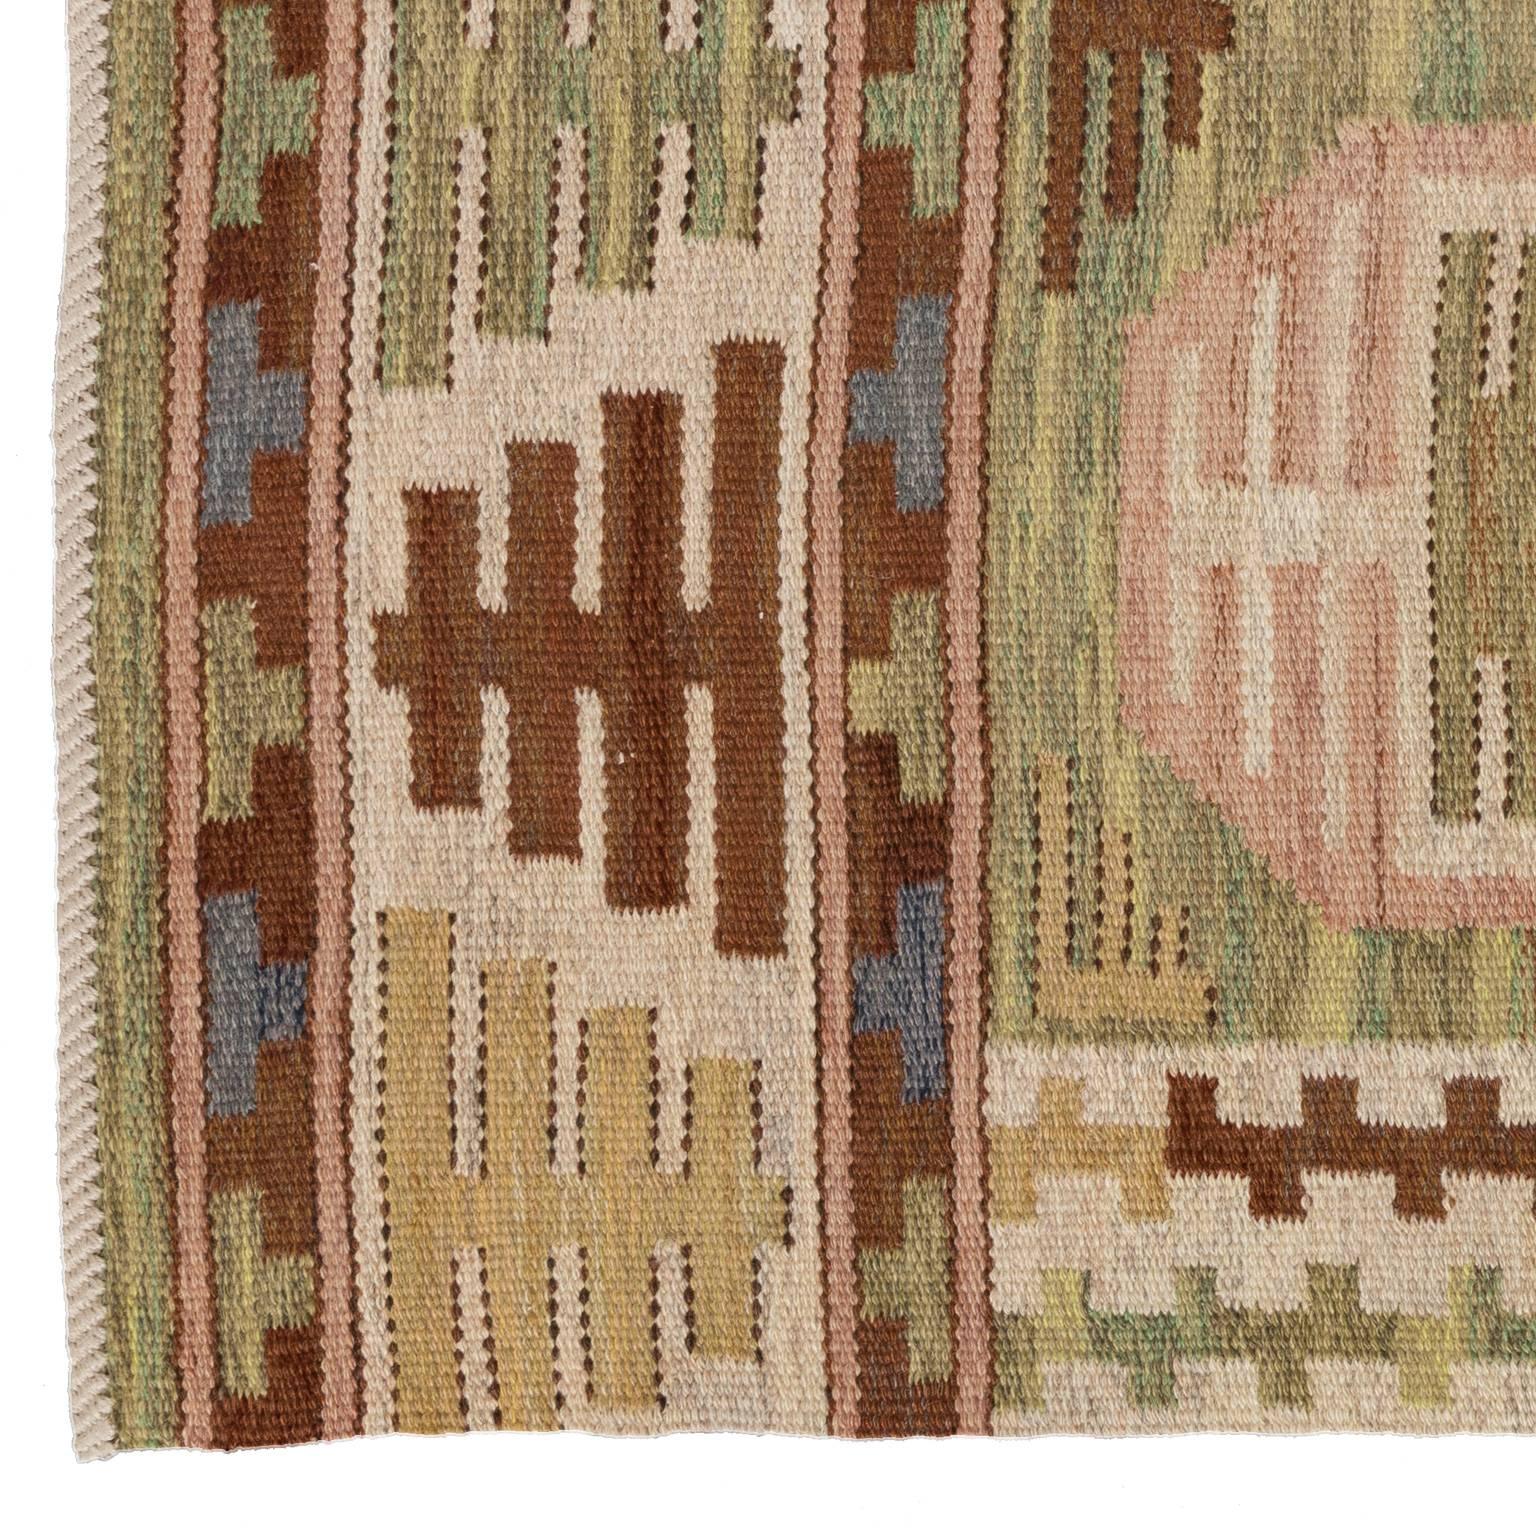 handwoven scandinavian rug called